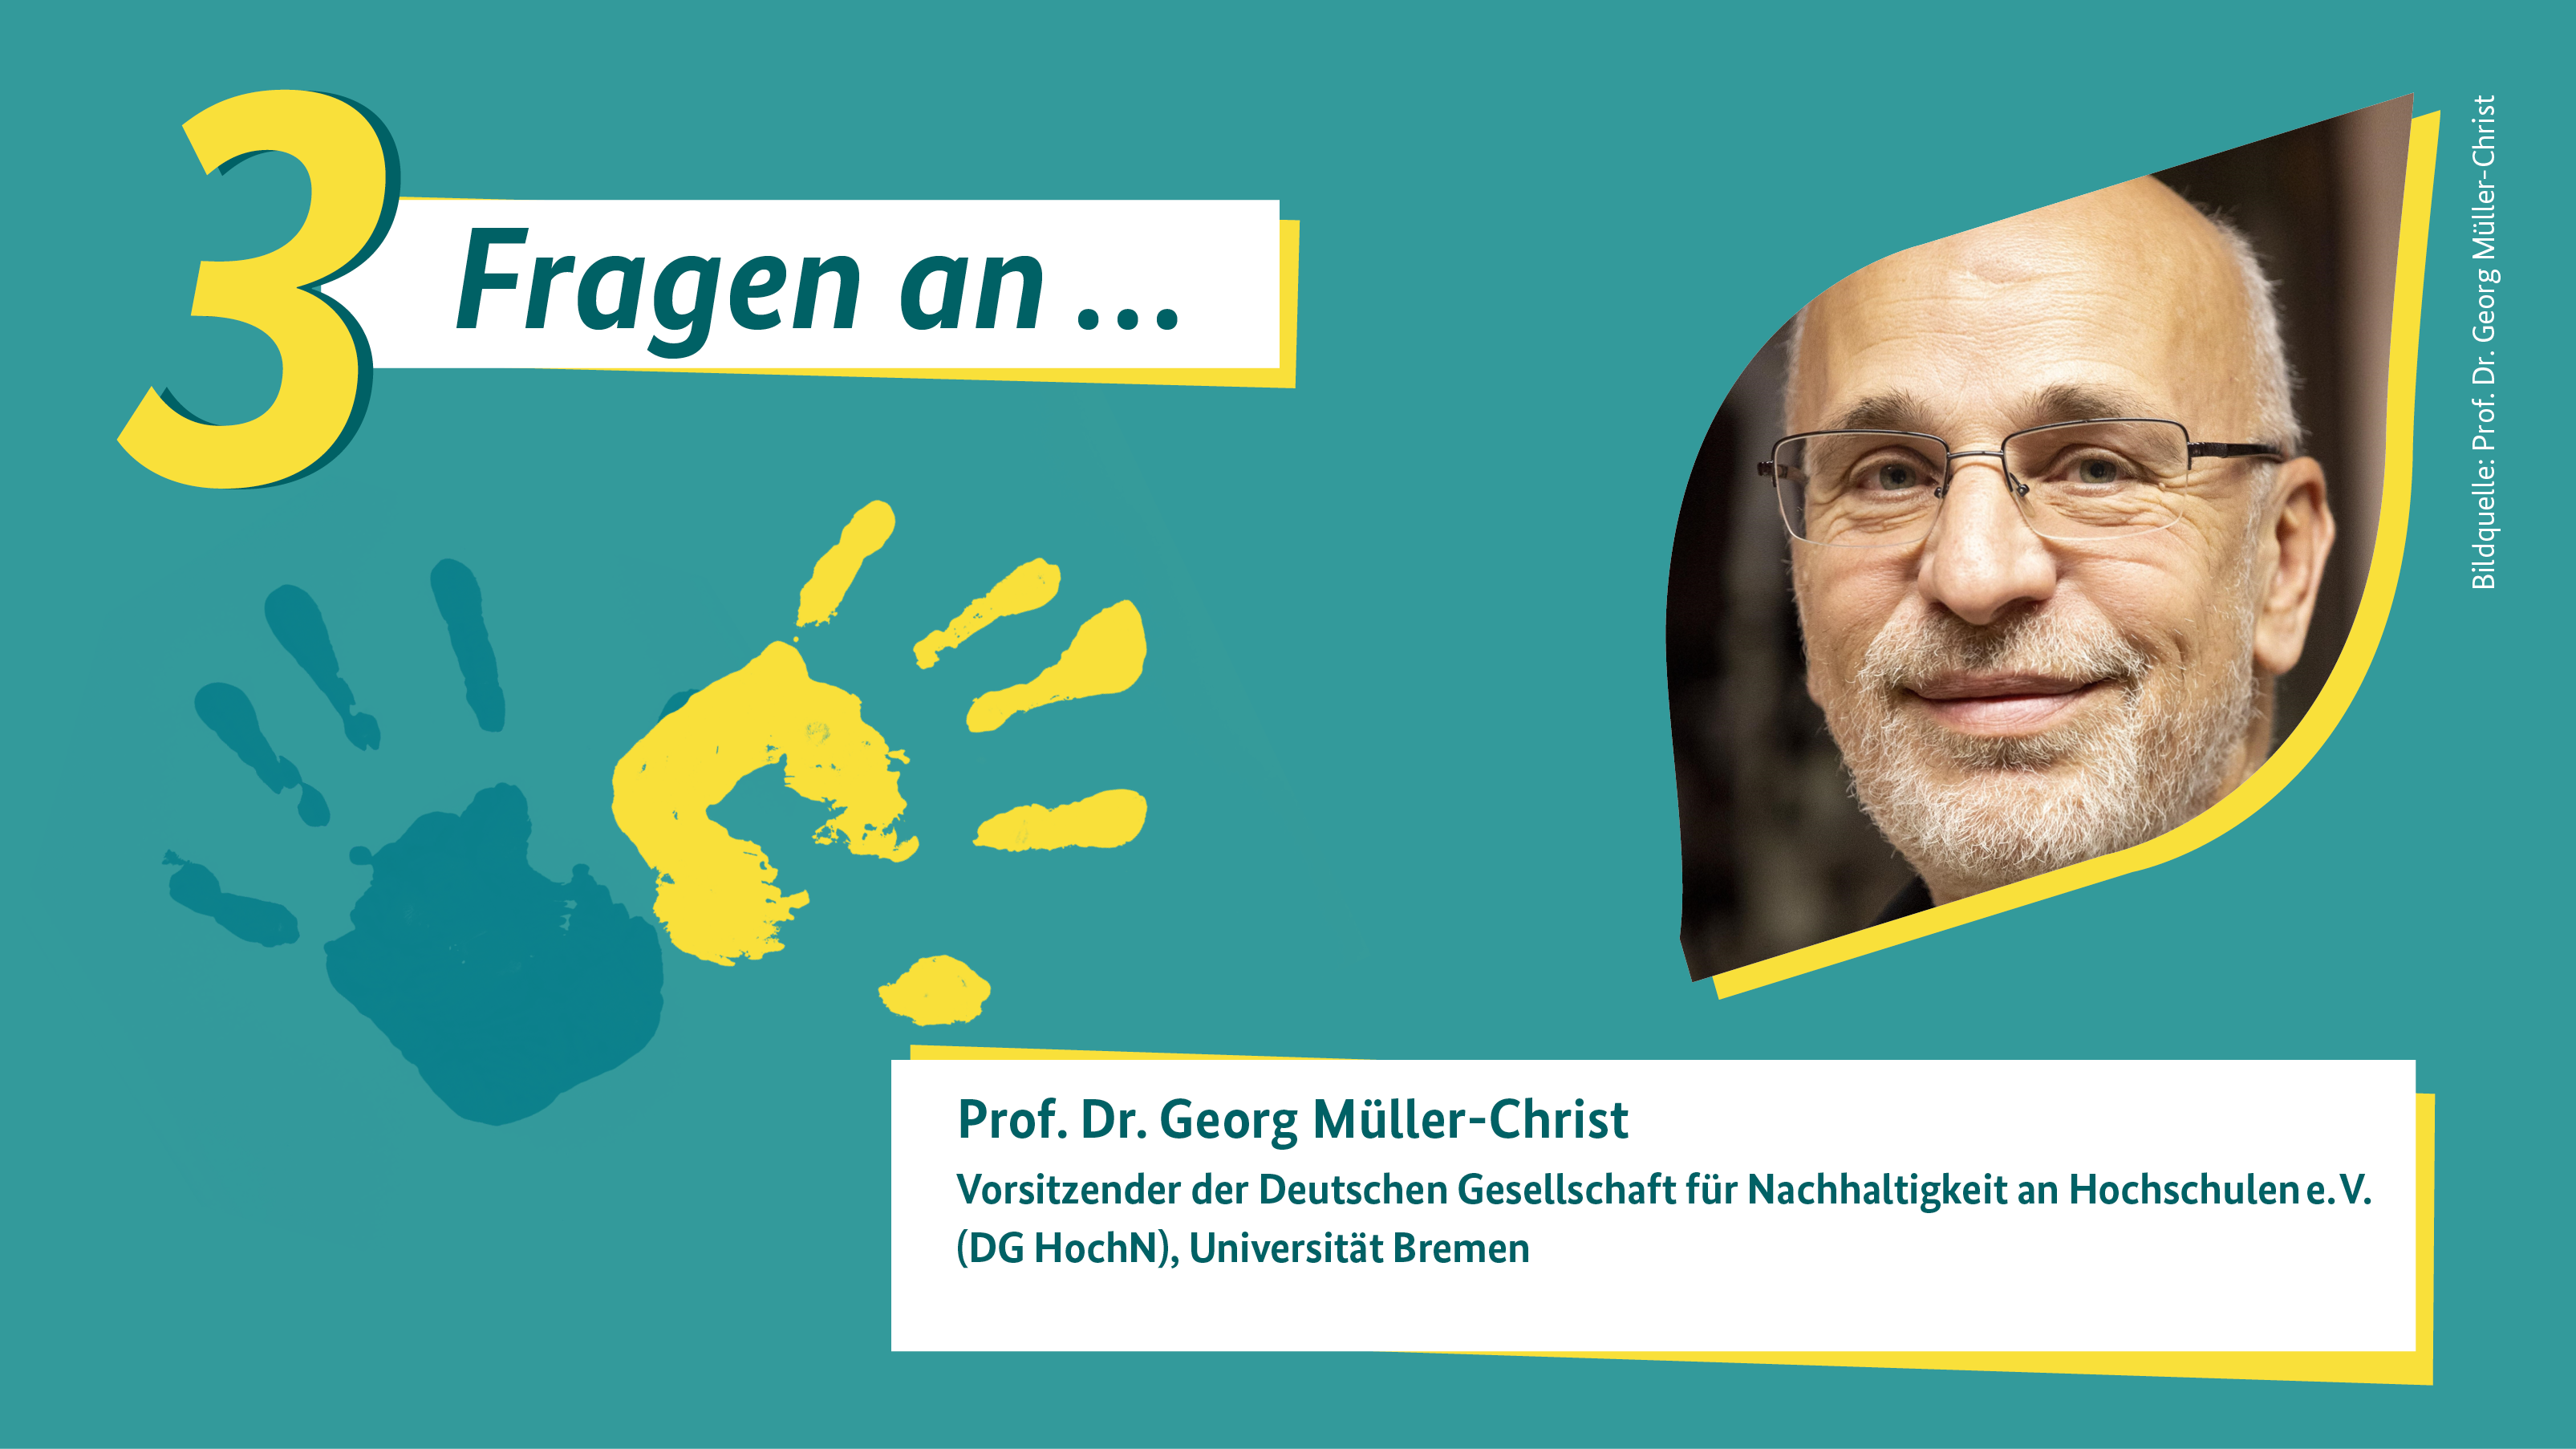 Grafik zu den 3 Fragen an Professor Dr. Georg Müller-Christ